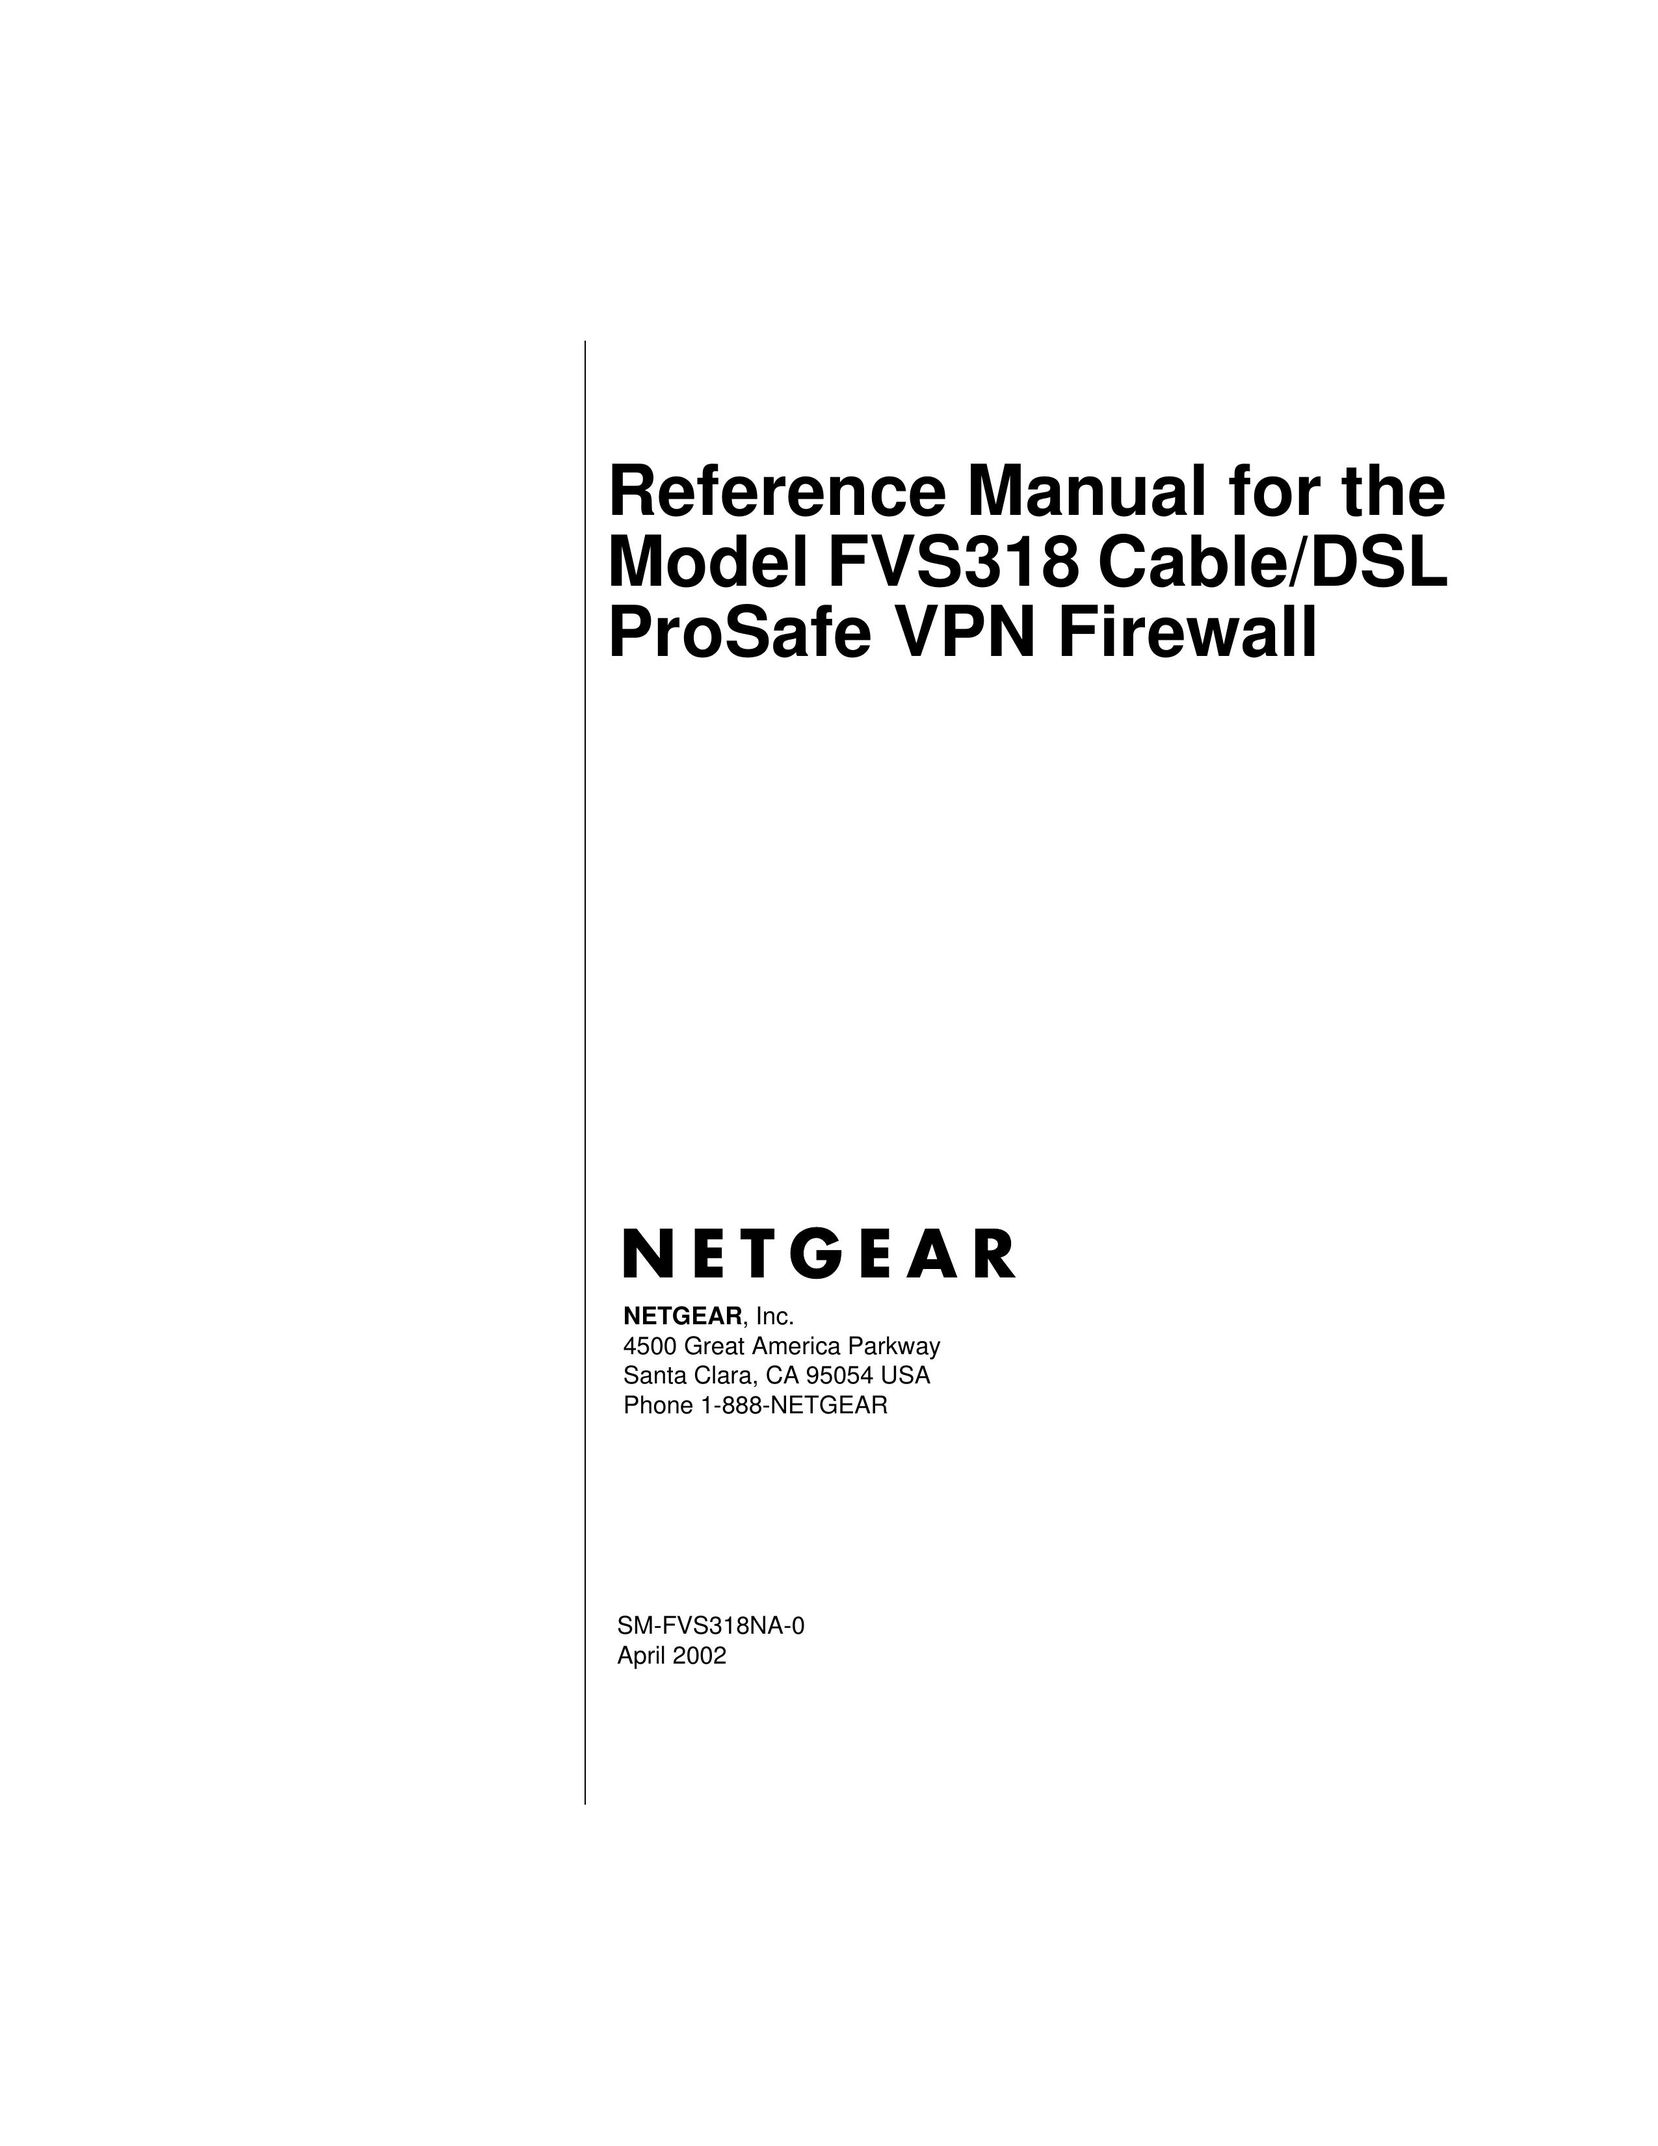 NETGEAR FVS318 Router User Manual